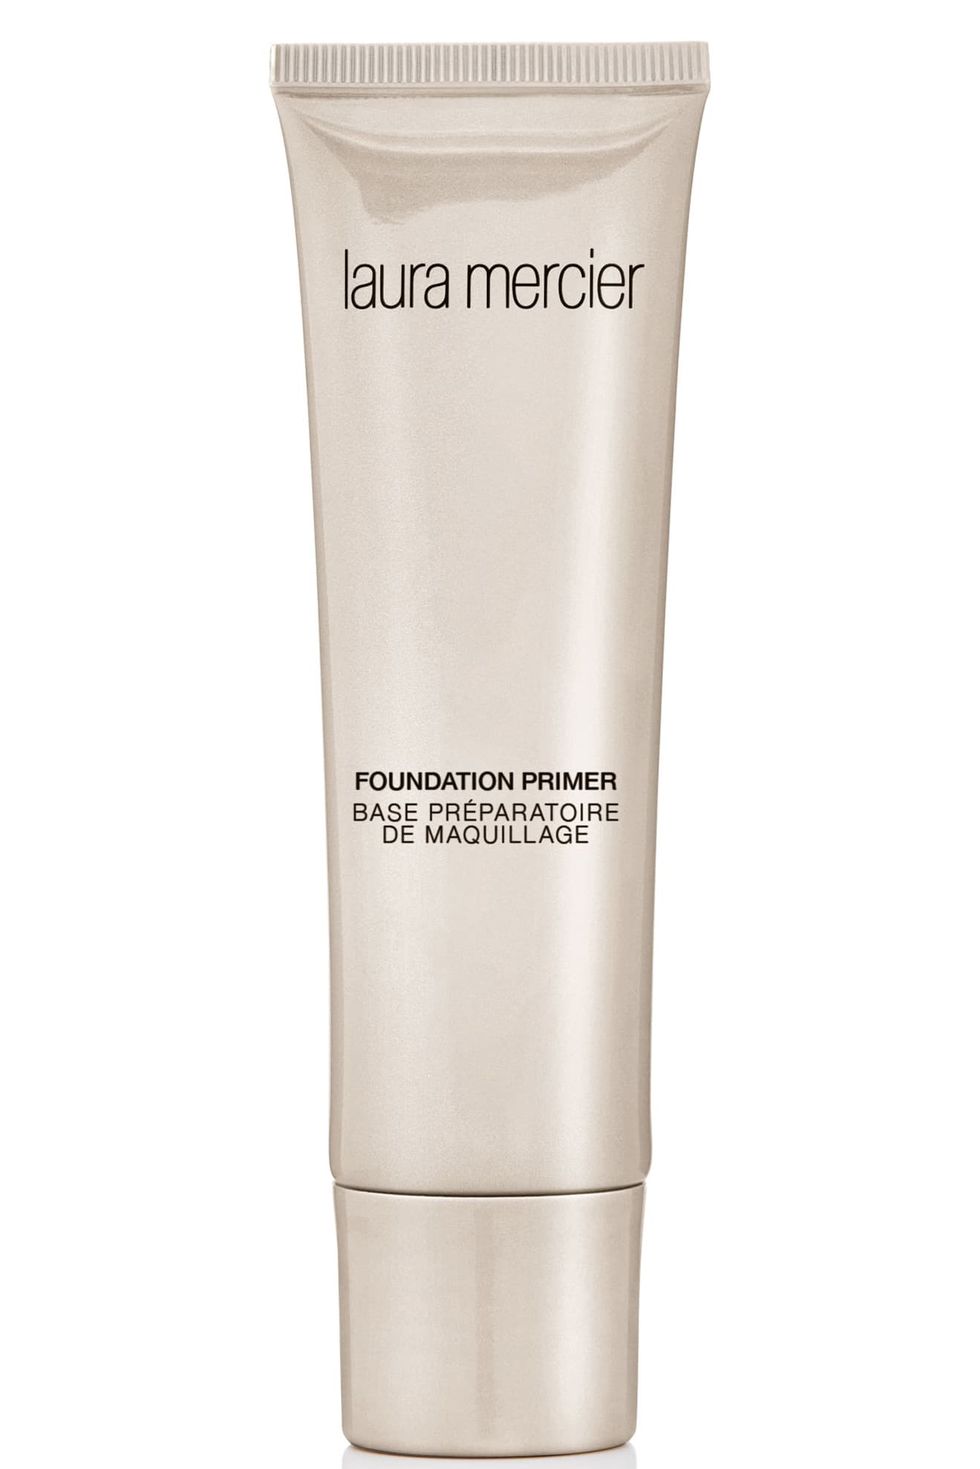 Laura Mercier Foundation Primer